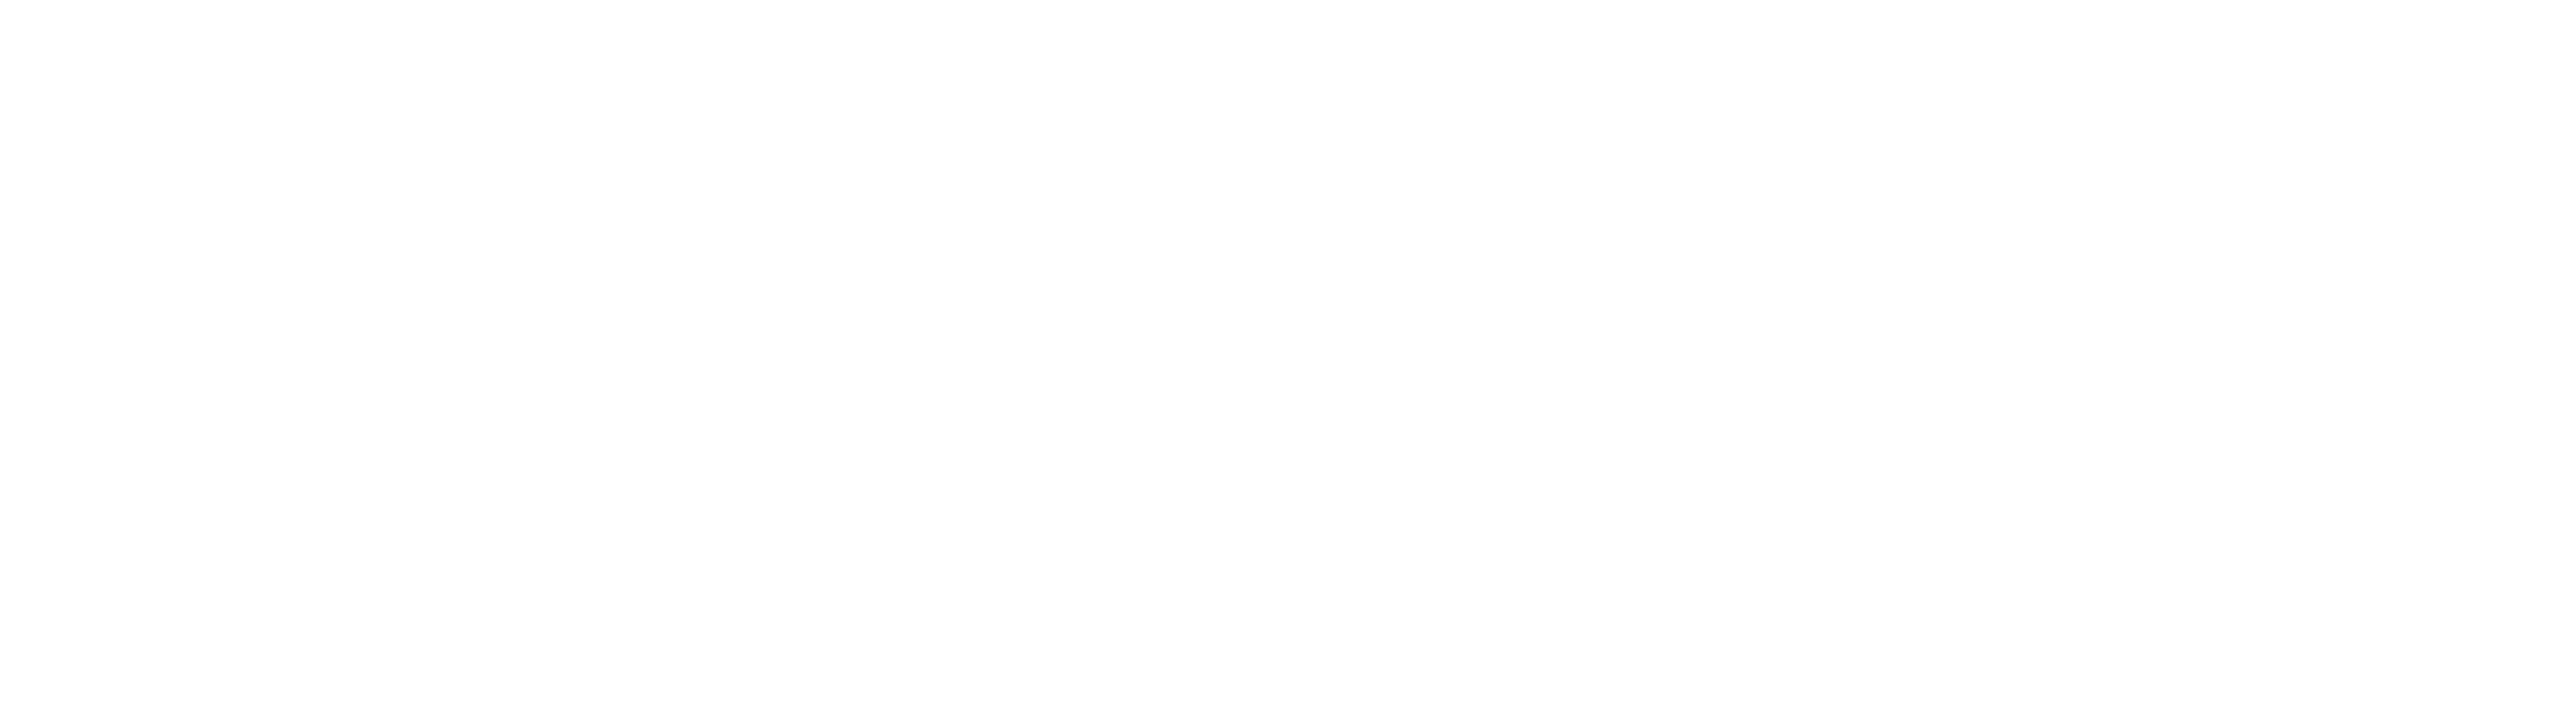 CEESA+Logo+White